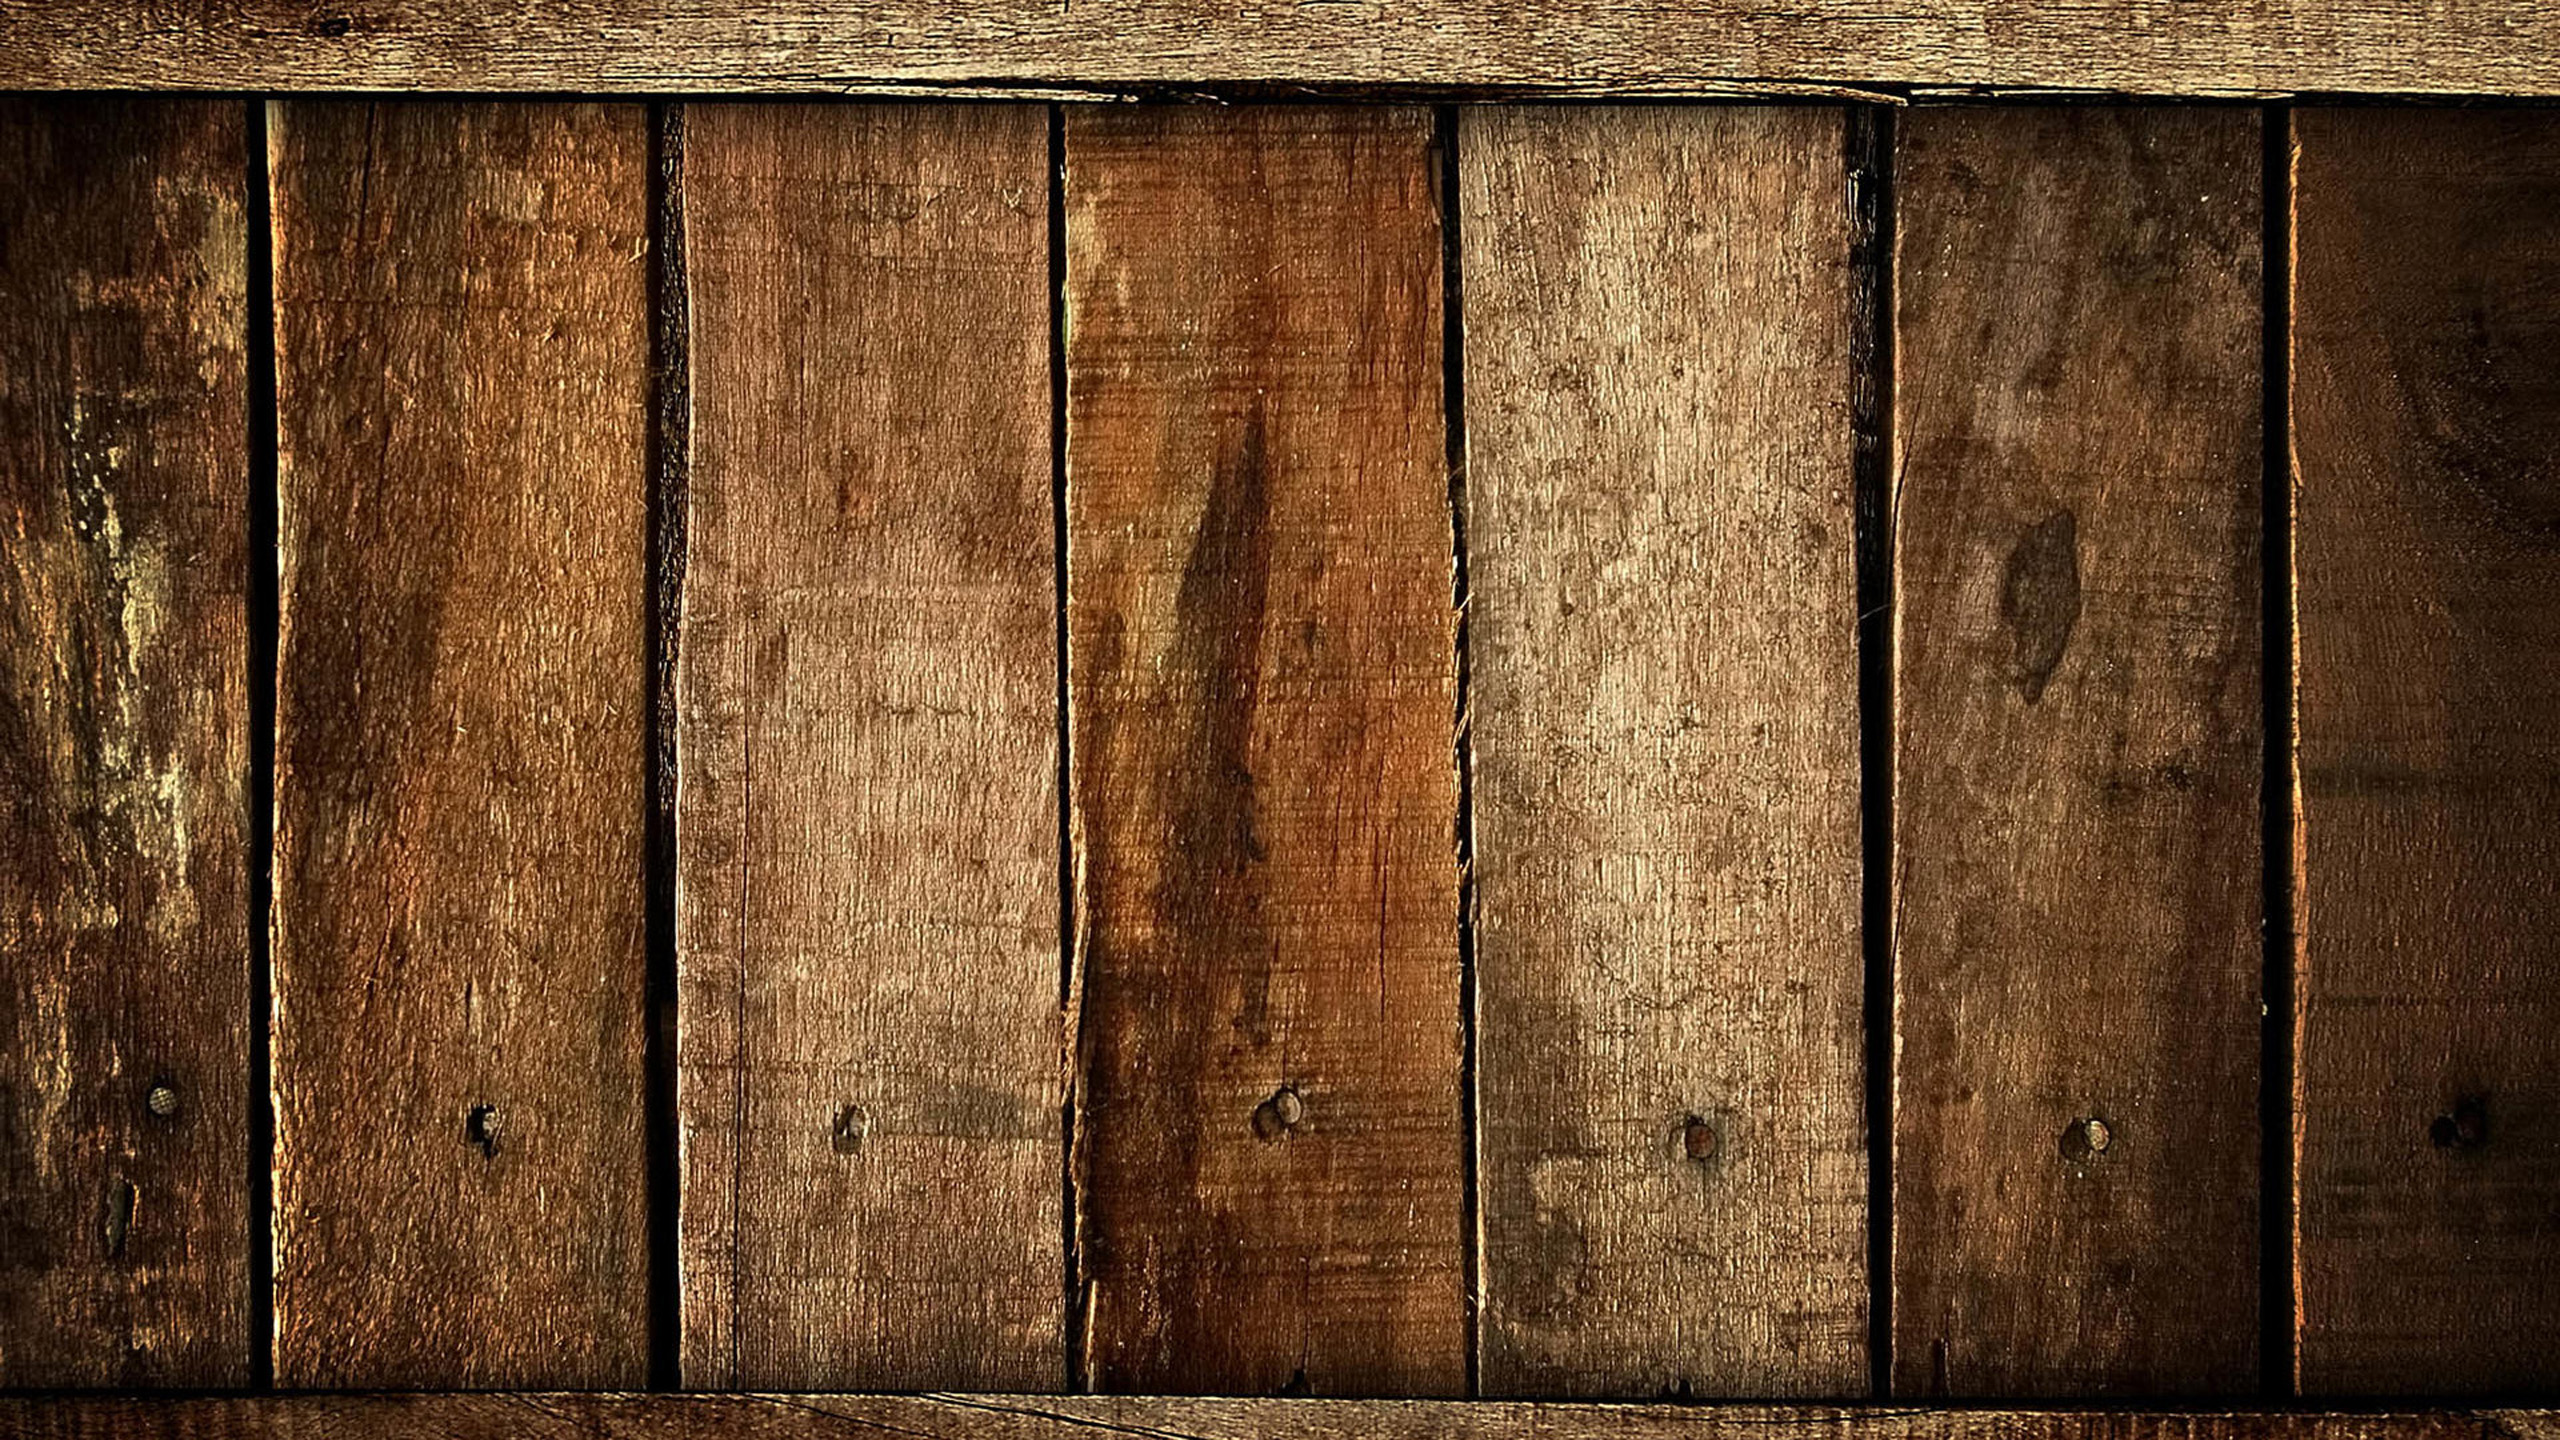 vecchia carta da parati in legno,legna,tavola,color legno,marrone,parete